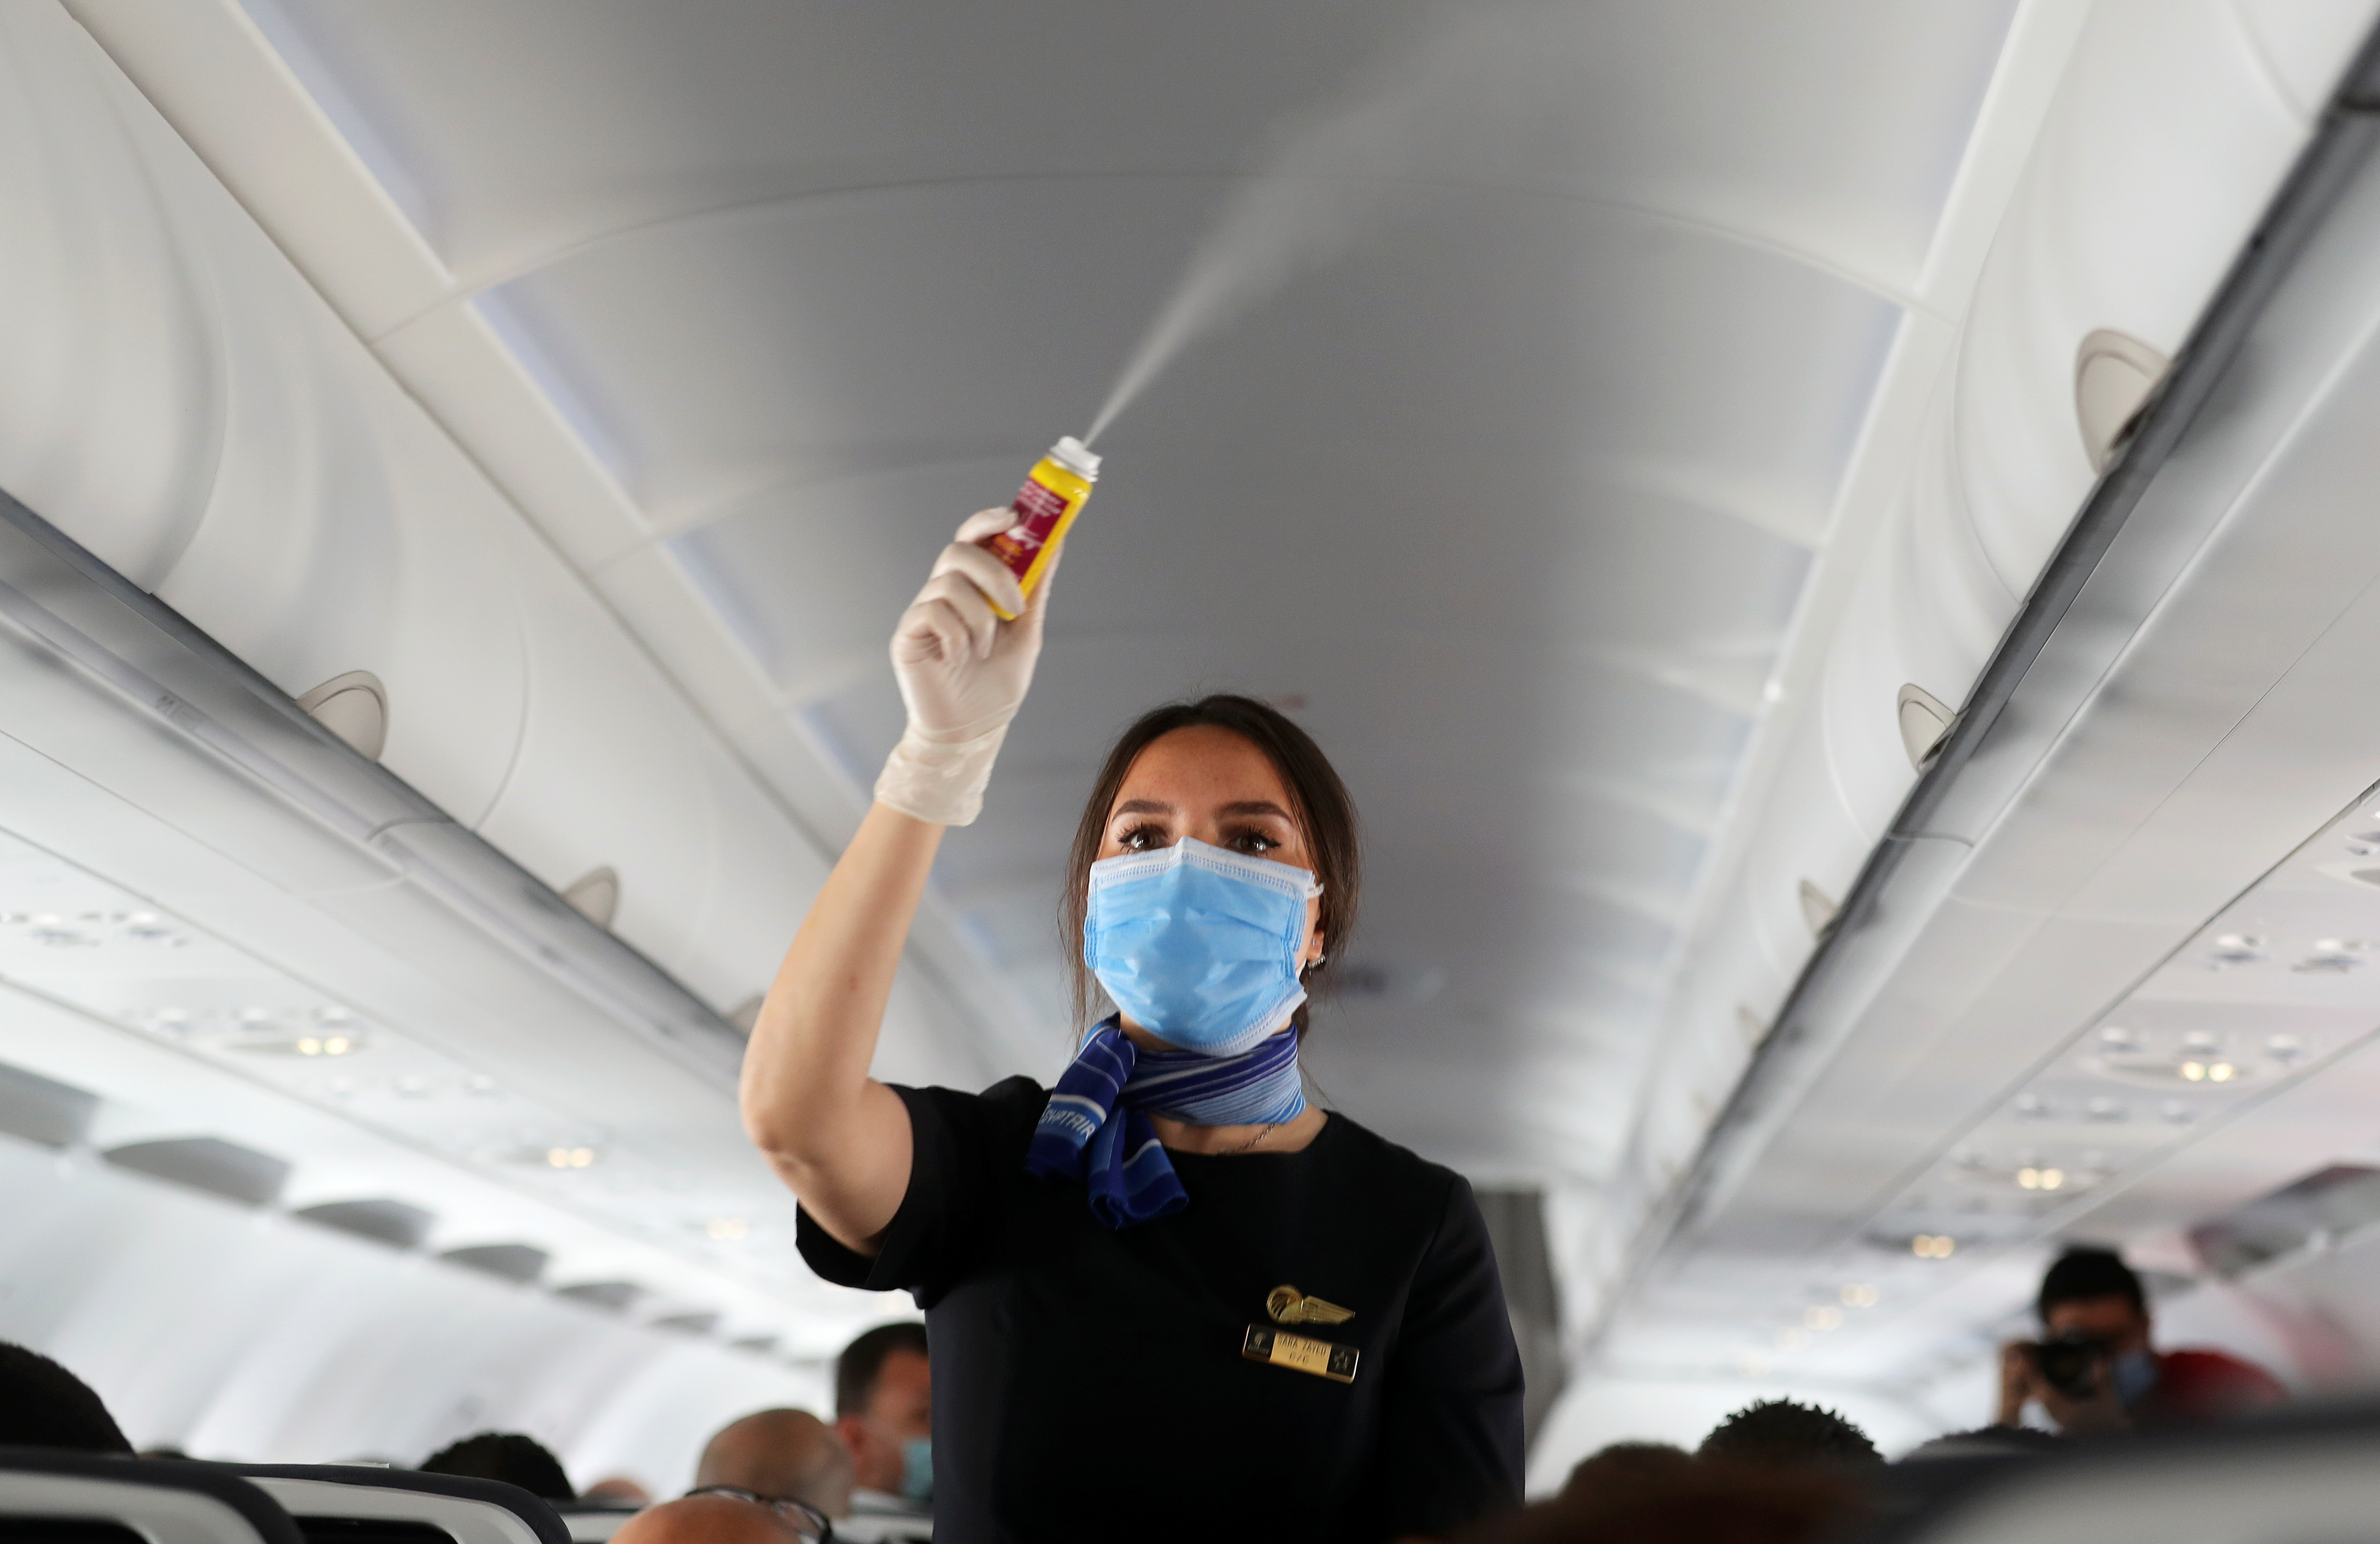 Muchas aerolíneas permiten no usar barbijo en el interior de los aviones, aunque eso puede incrementar los contagios (REUTERS/Mohamed Abd El Ghany)